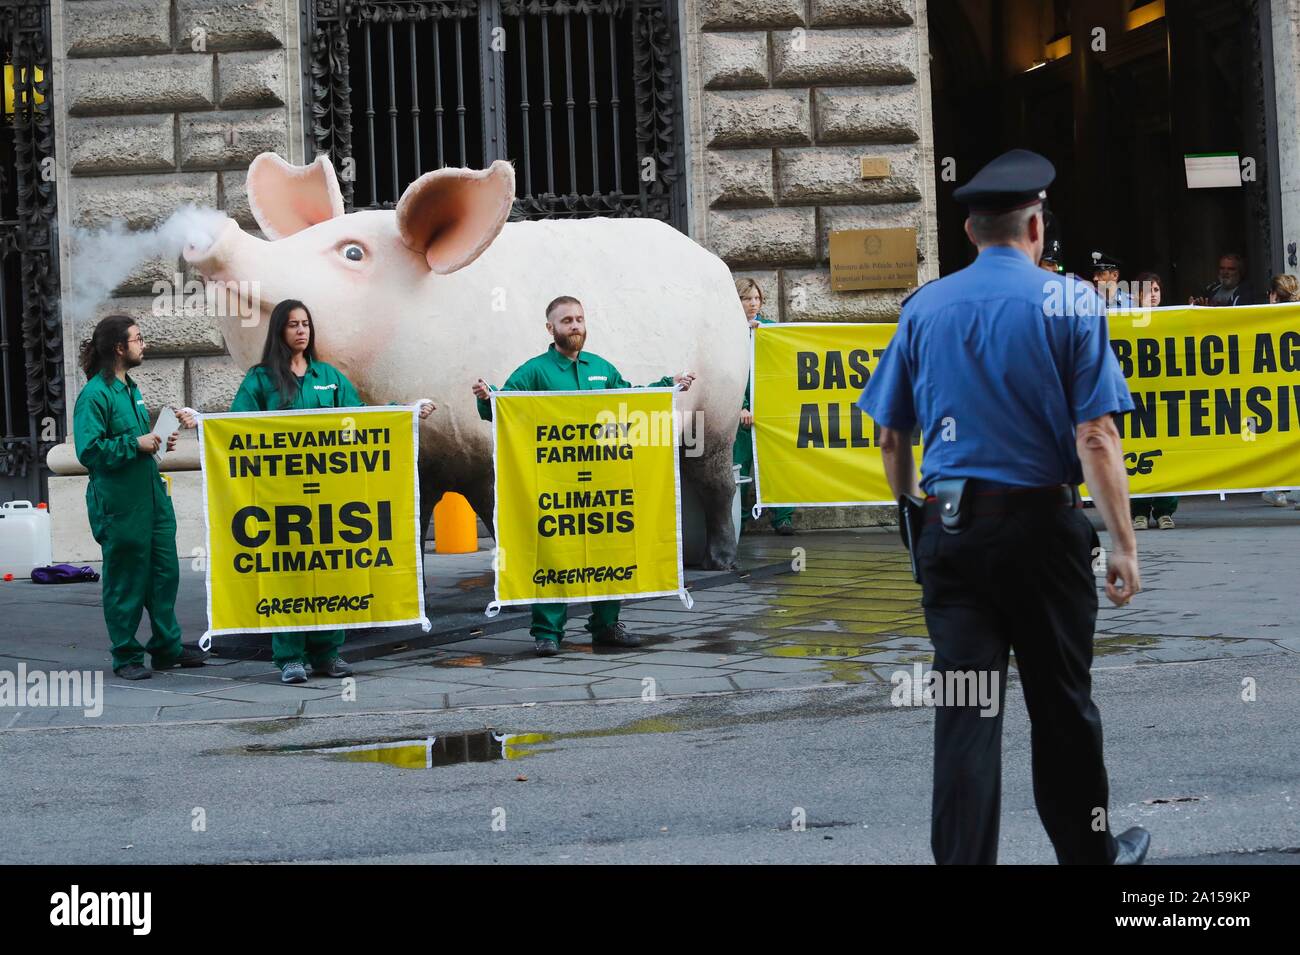 Italien, Rom, 24. September 2019: Greenpeace Aktivisten protestieren vor dem Ministerium für Landwirtschaft, die Aussetzung der Finanzierung für intens zu verlangen. Stockfoto